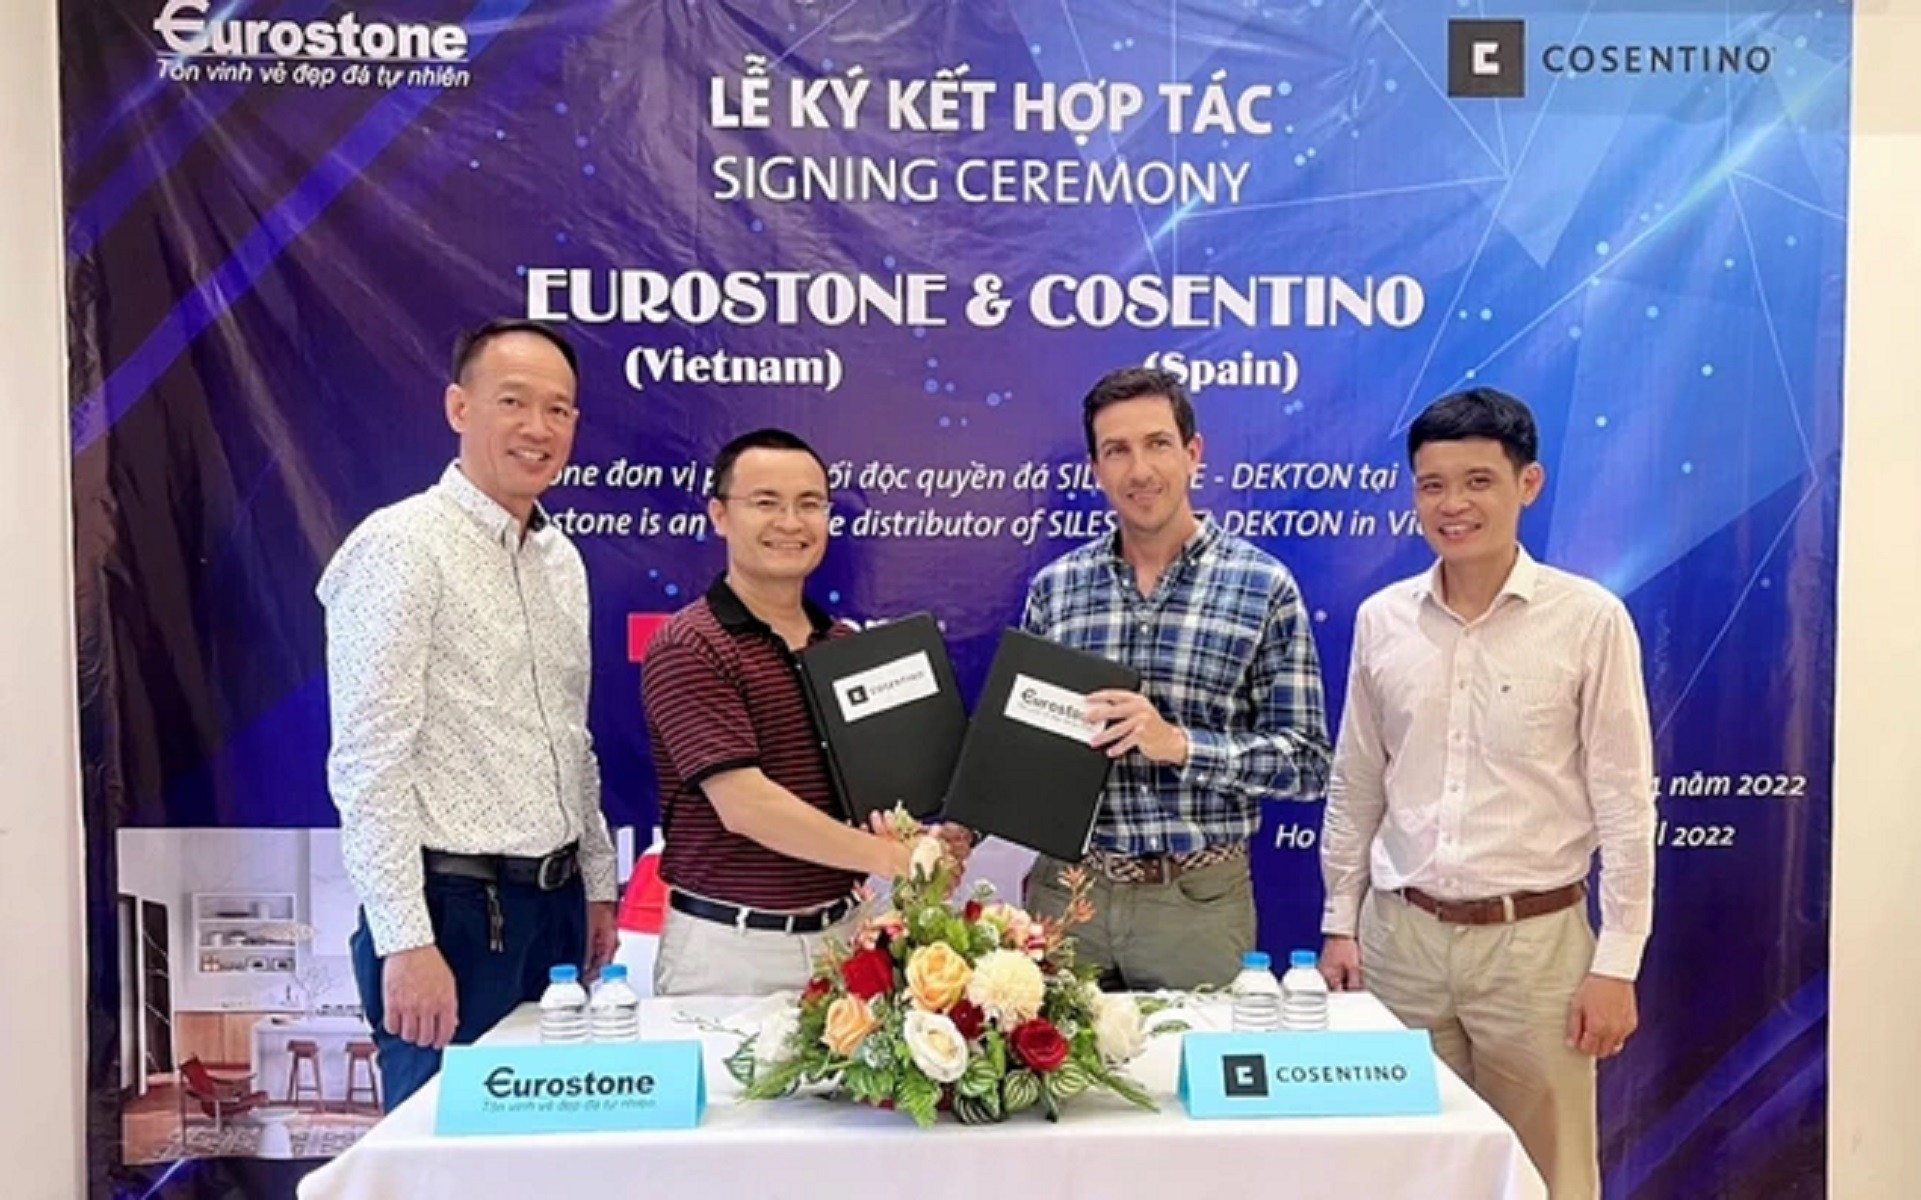 

Eurostone mới đây cũng vừa có biên bản ký kết hợp tác phát triển thị trường đá nhân tạo cao cấp với Cosentino Tây Ban Nha
